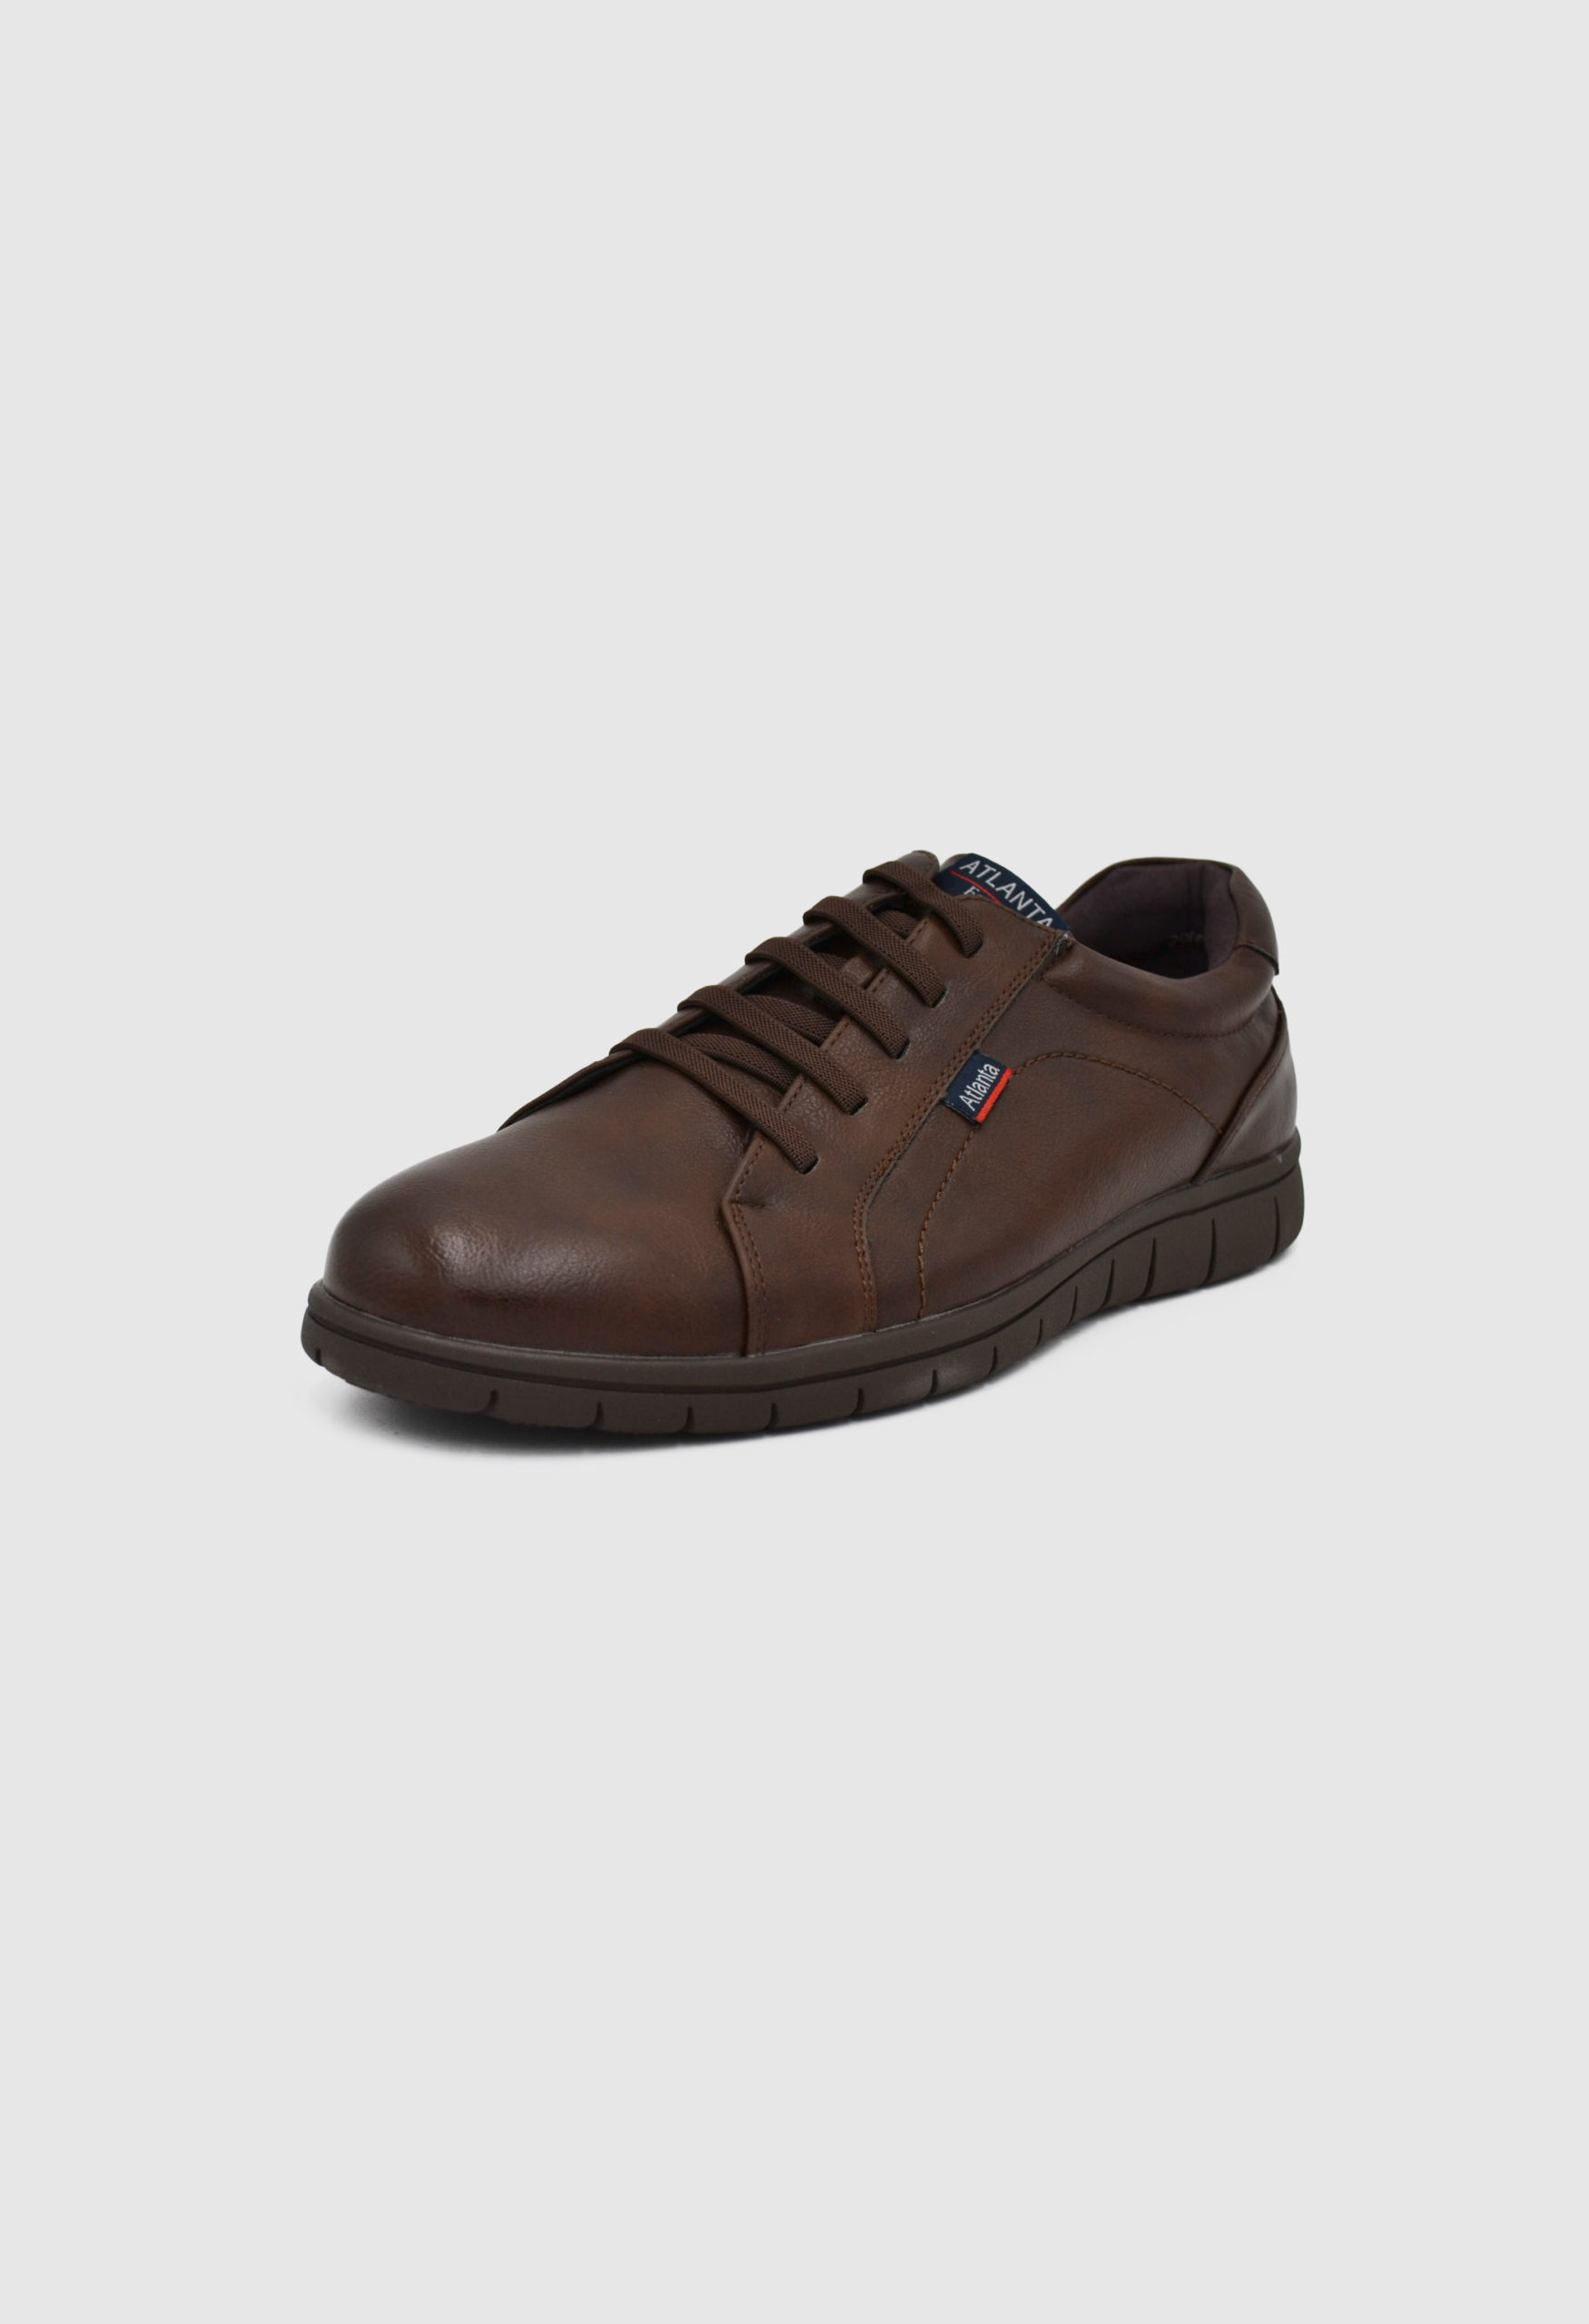 Ανδρικά Casual Παπούτσια Καφέ  / 2905-brown OXFORDS & CASUAL joya.gr